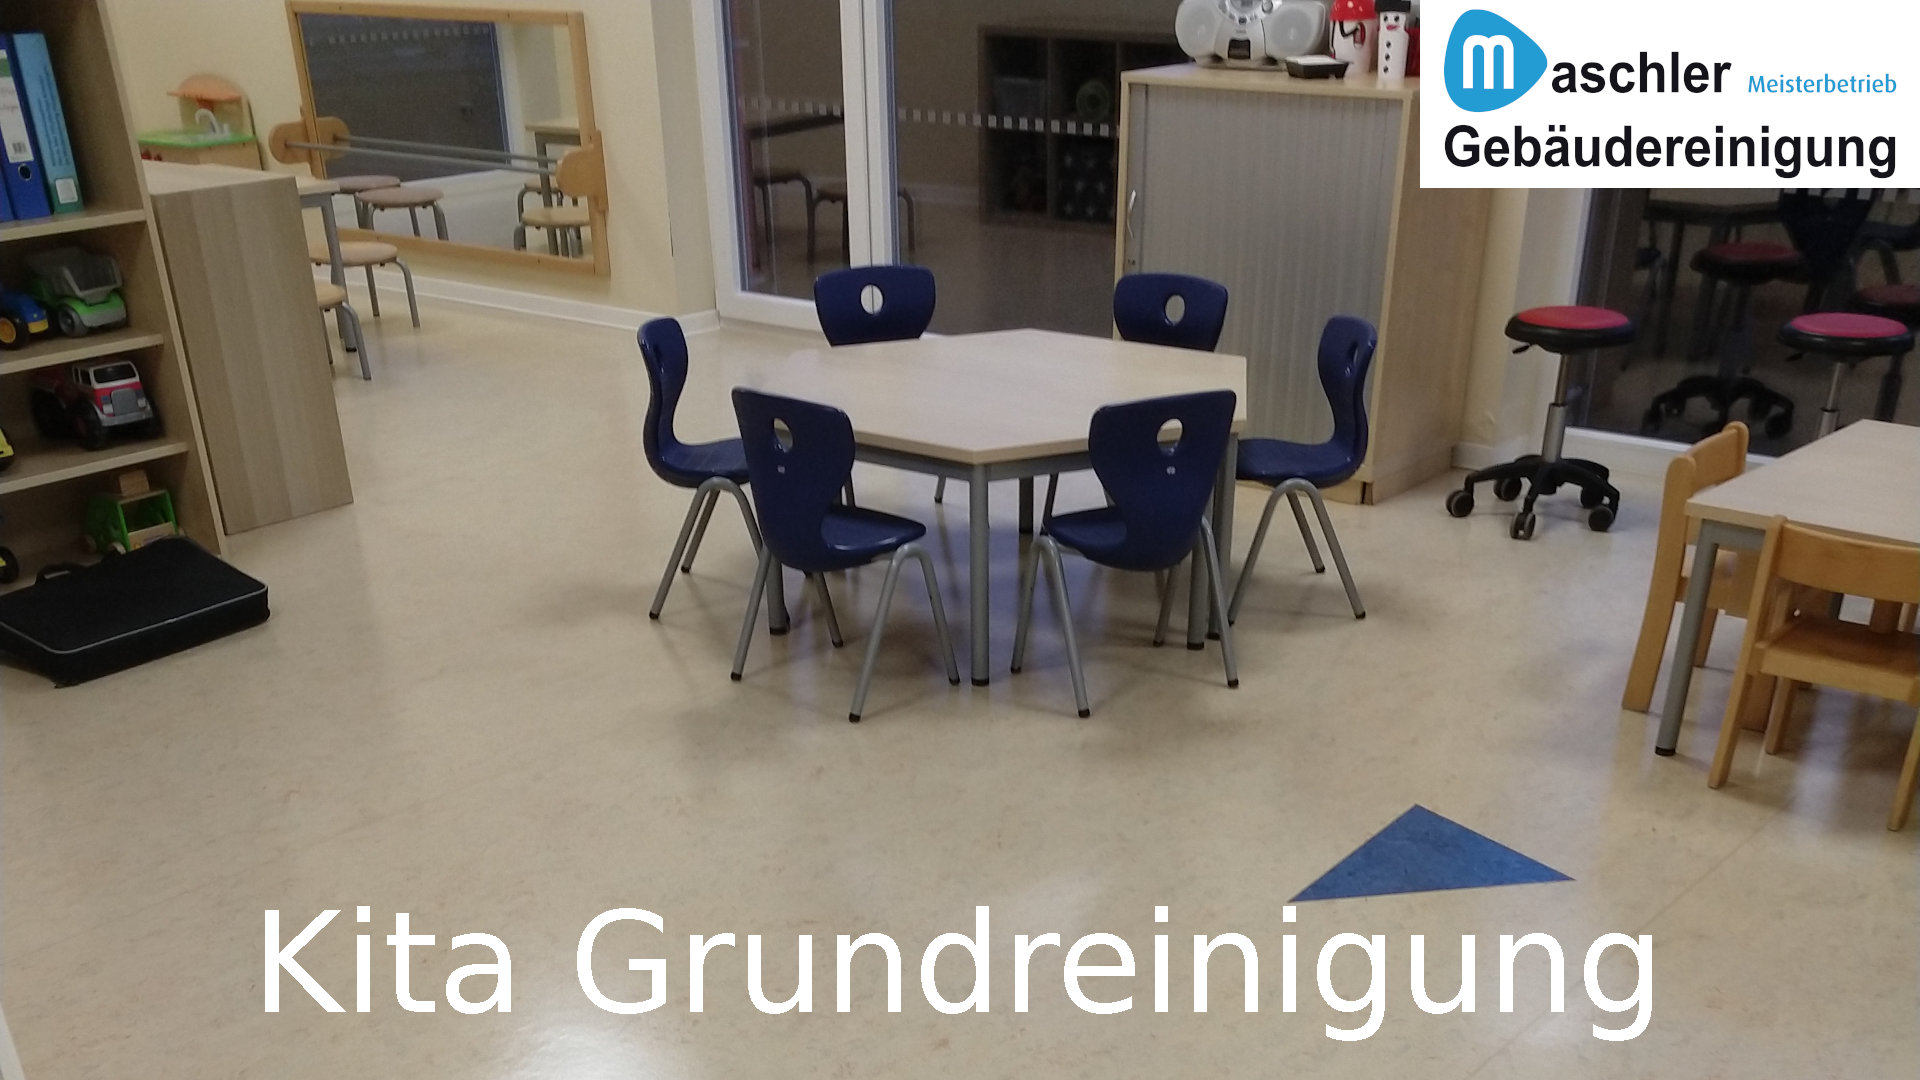 Grundreinigung im Kindergarten - Gebäudereinigung Maschler Schwerin